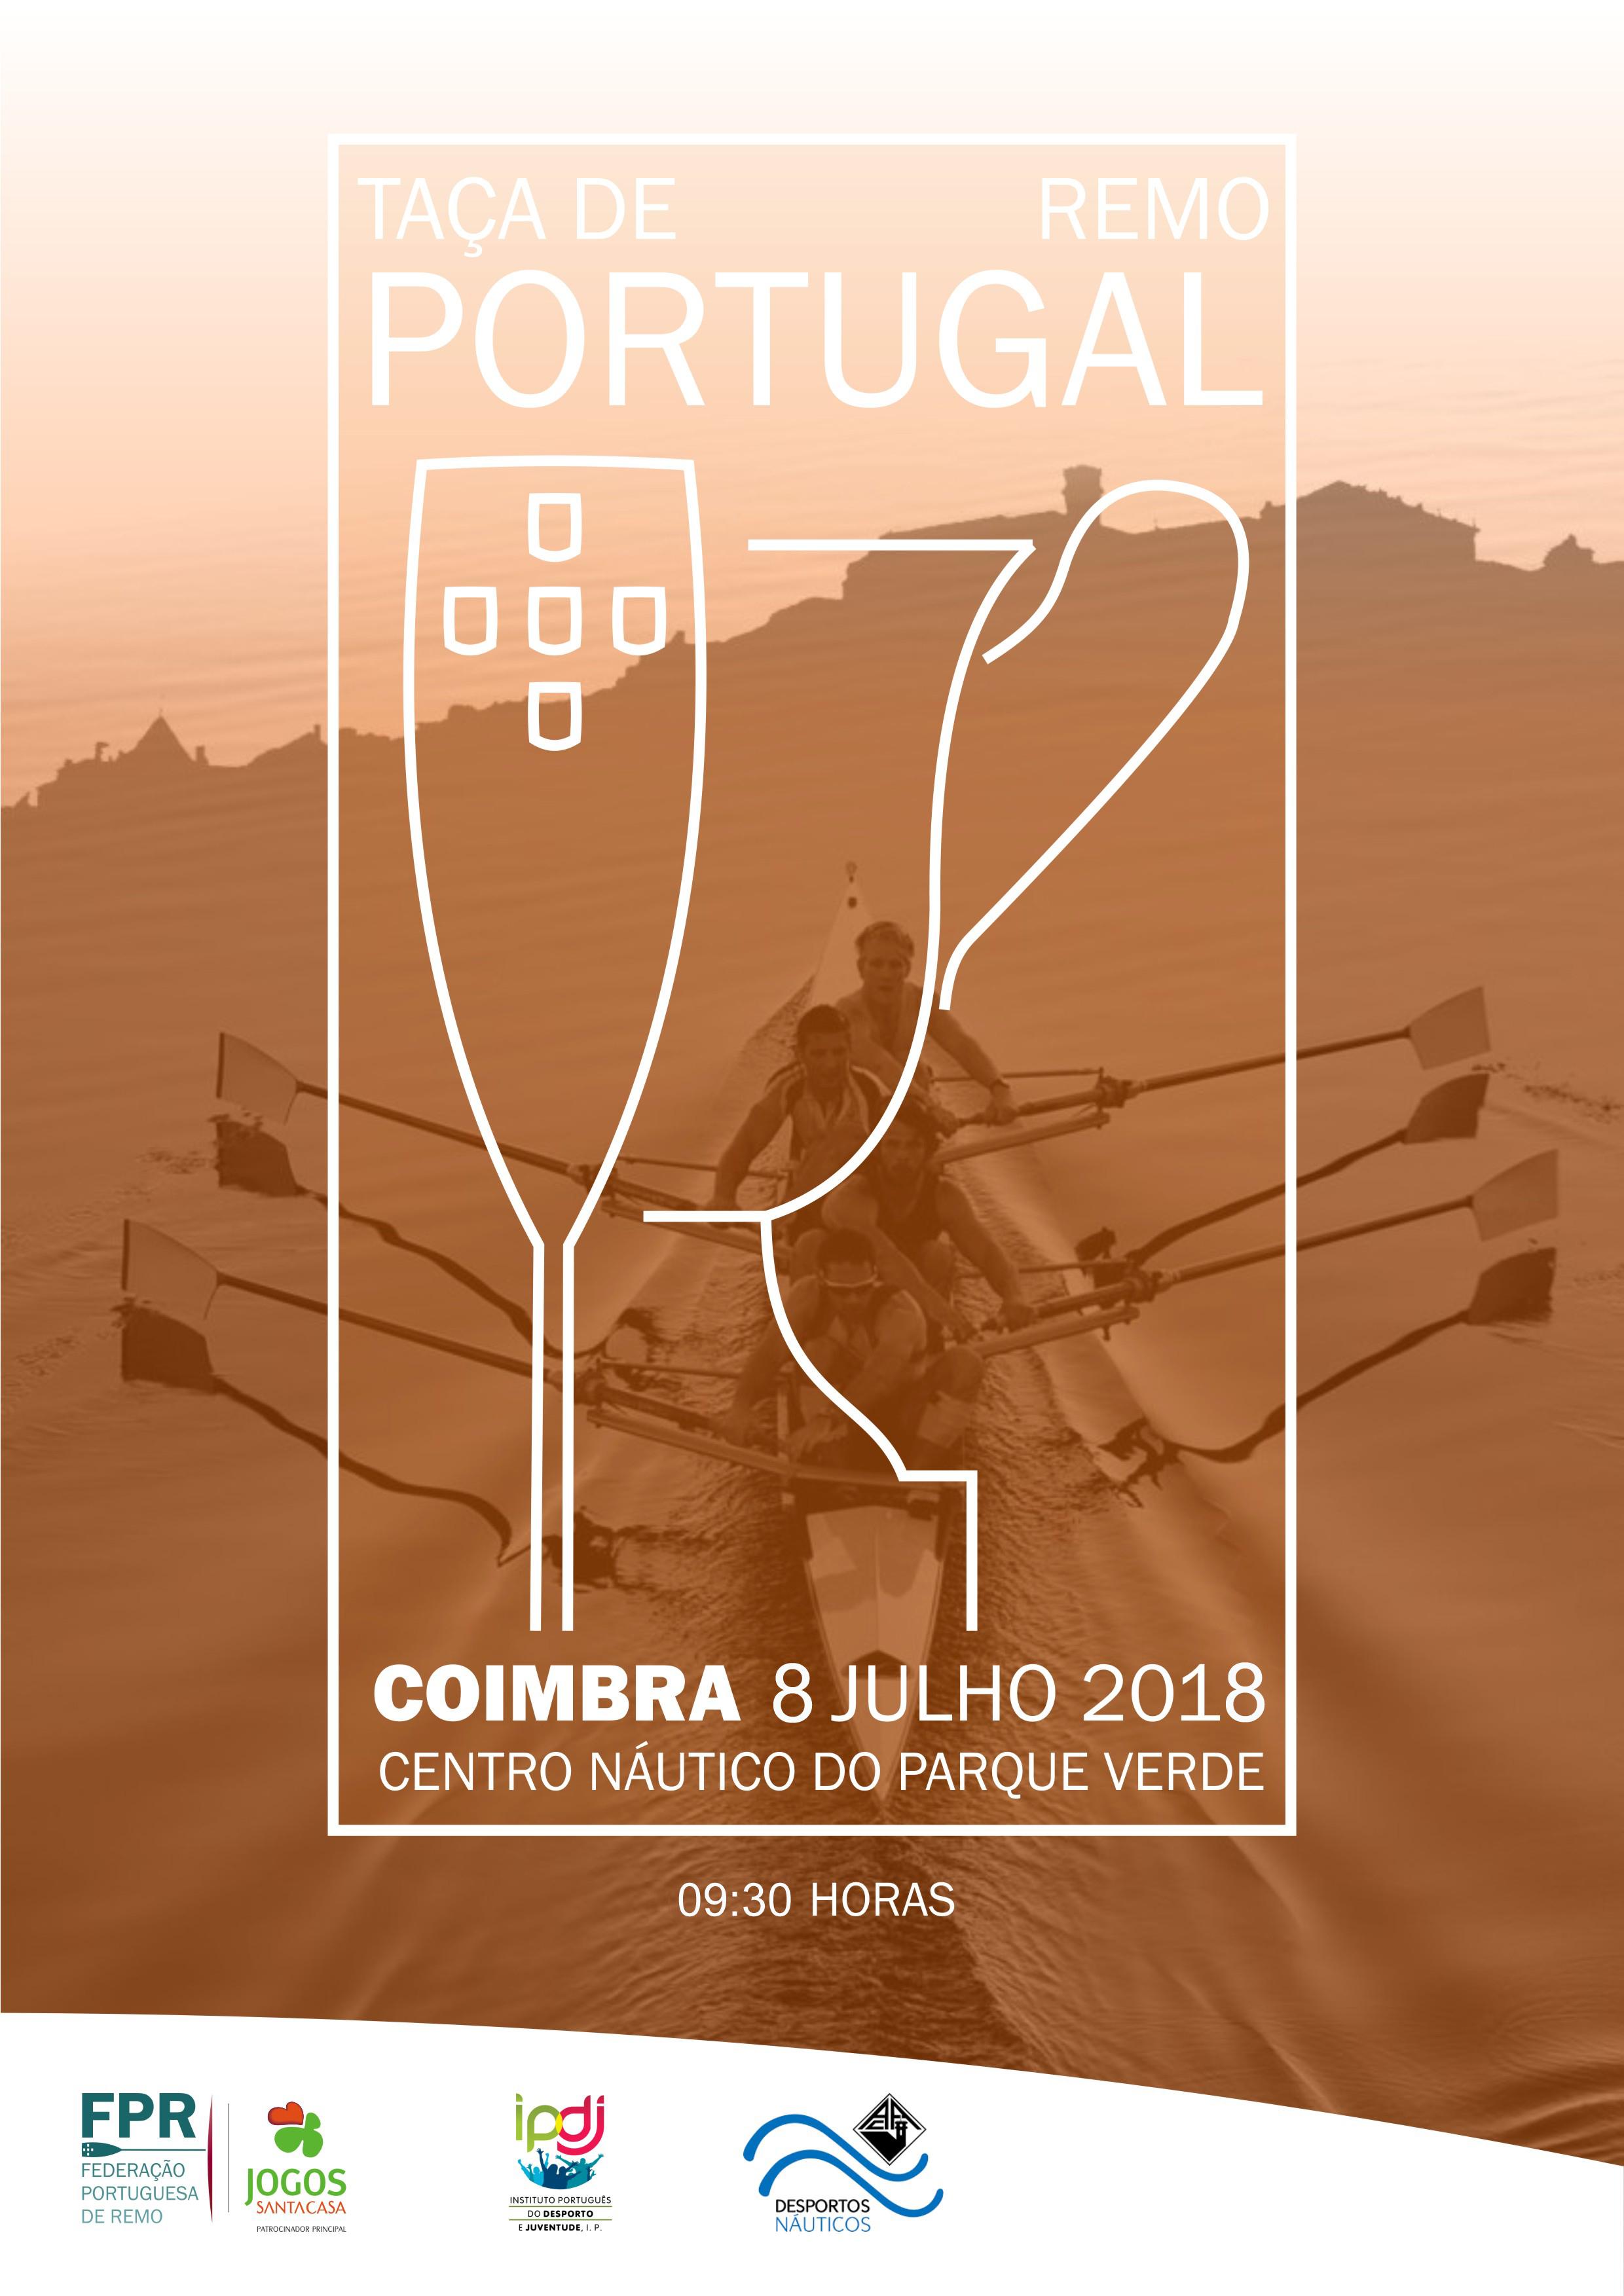 Última etapa do Circuito da Taça de Portugal e Taça ARBL